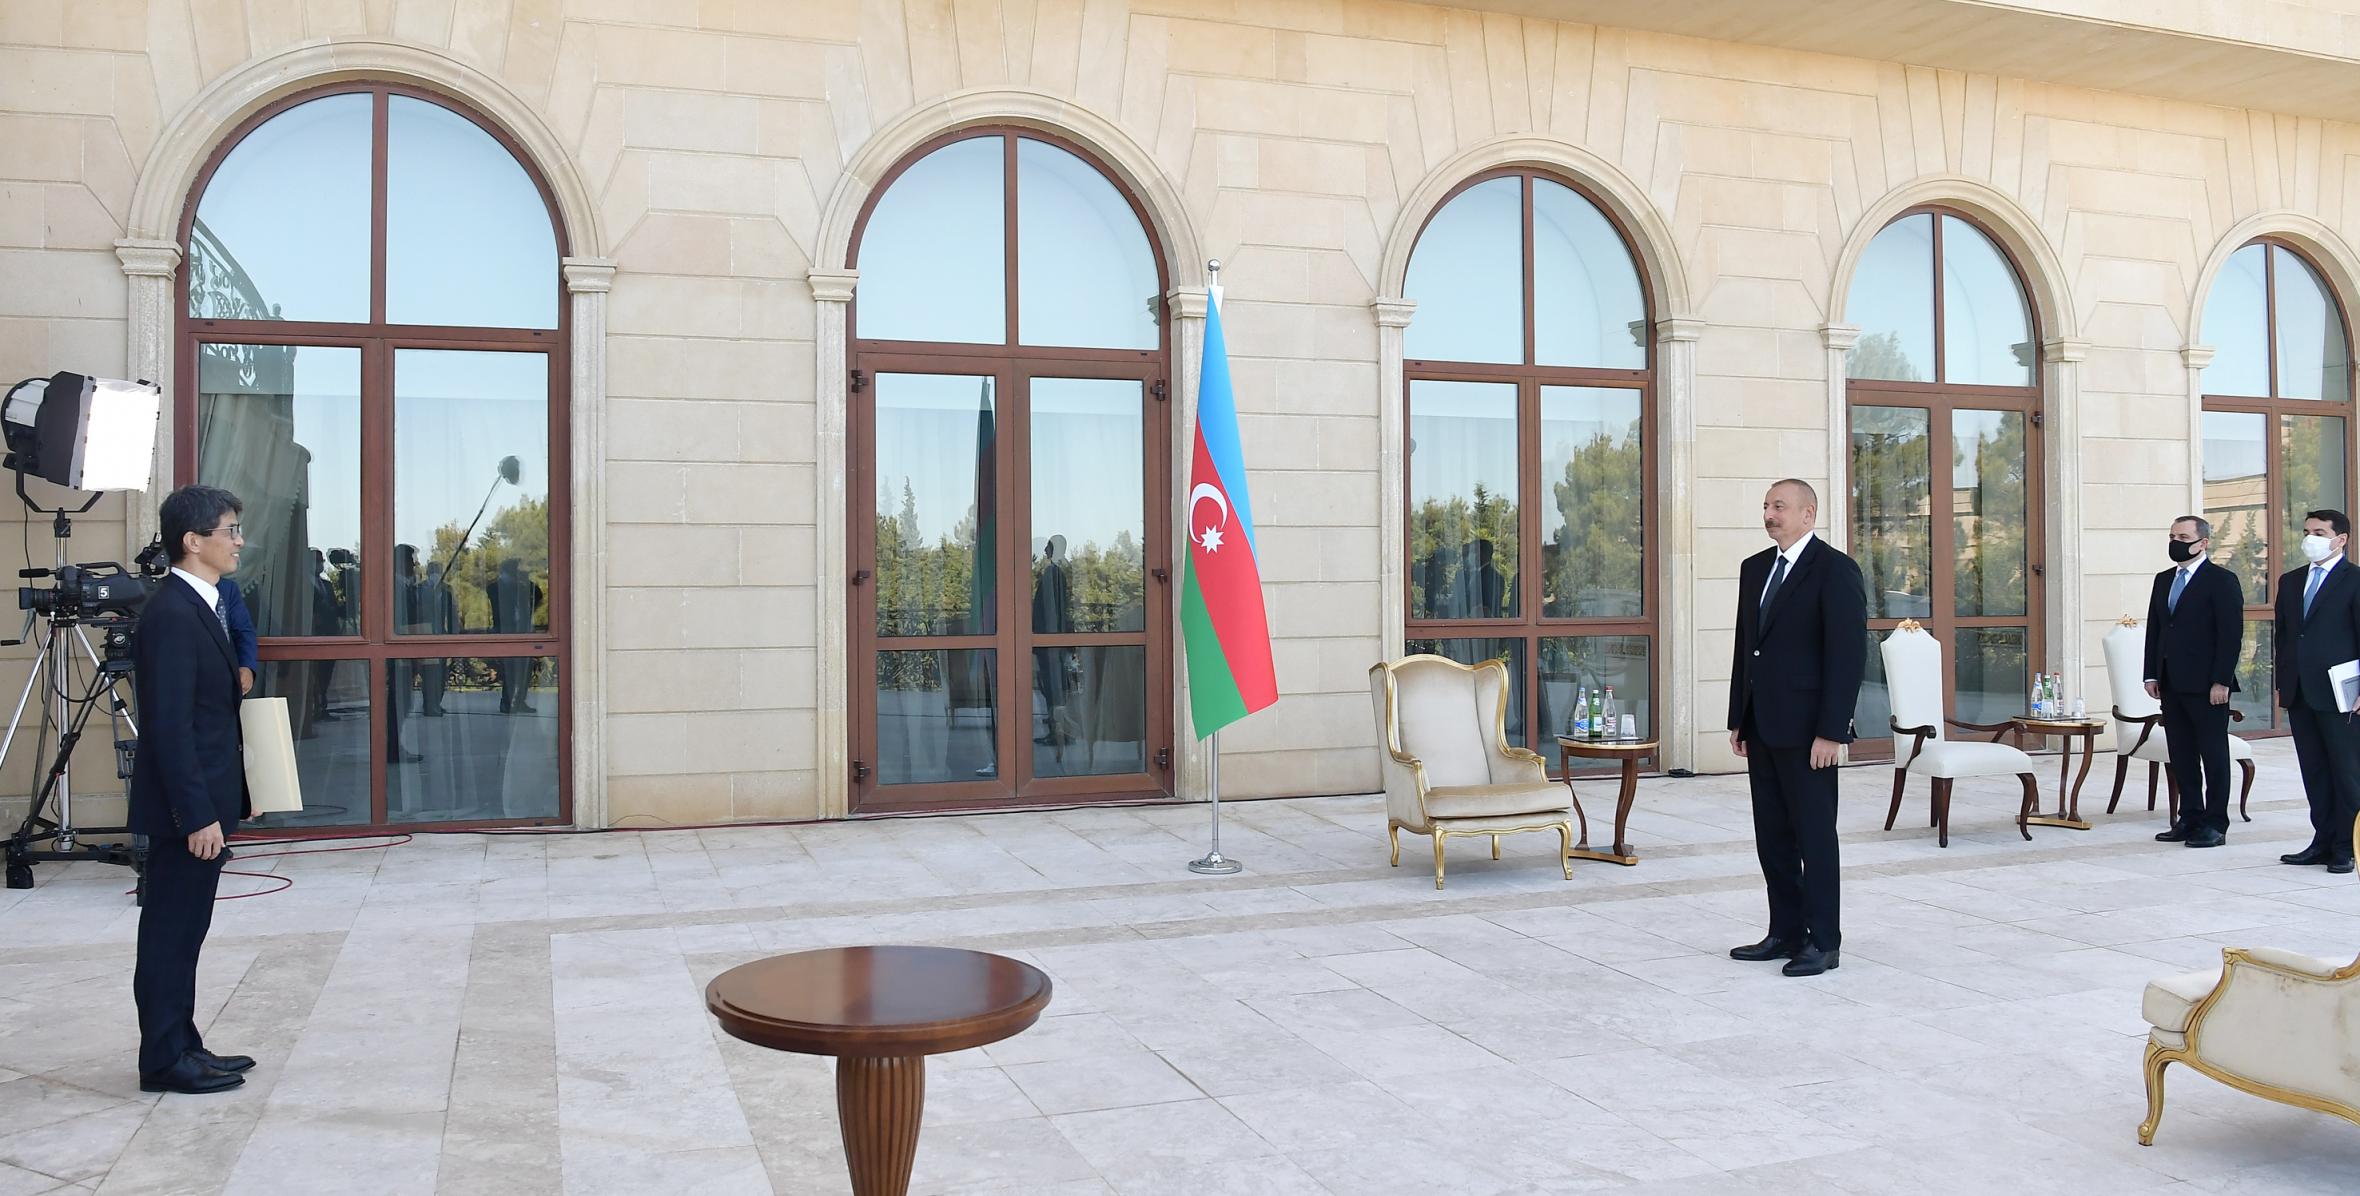 Ильхам Алиев принял верительные грамоты новоназначенного посла Японии в Азербайджане